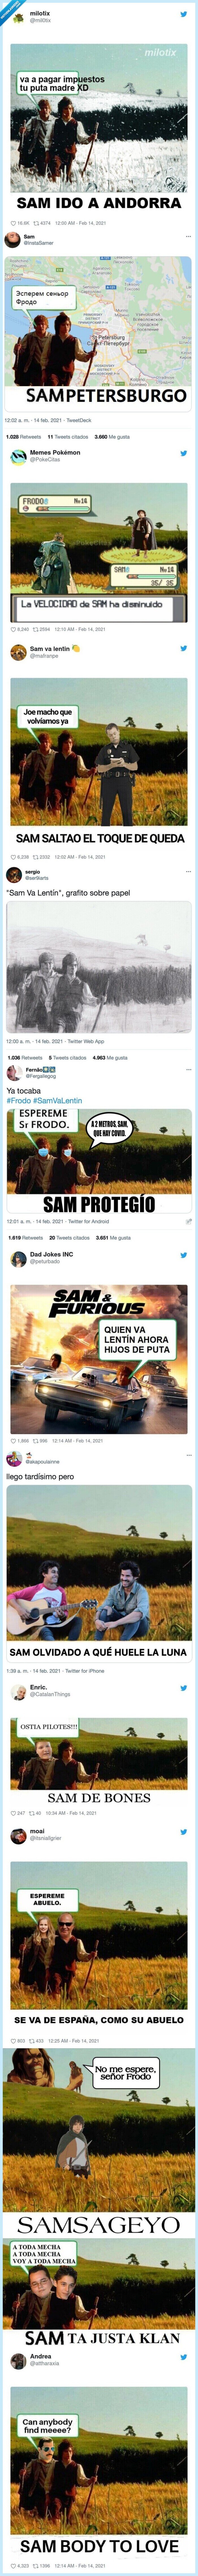 813975 - Ya llegó el día: aquí están los mejores memes de SAM VA LENTÍN por SanValentín 